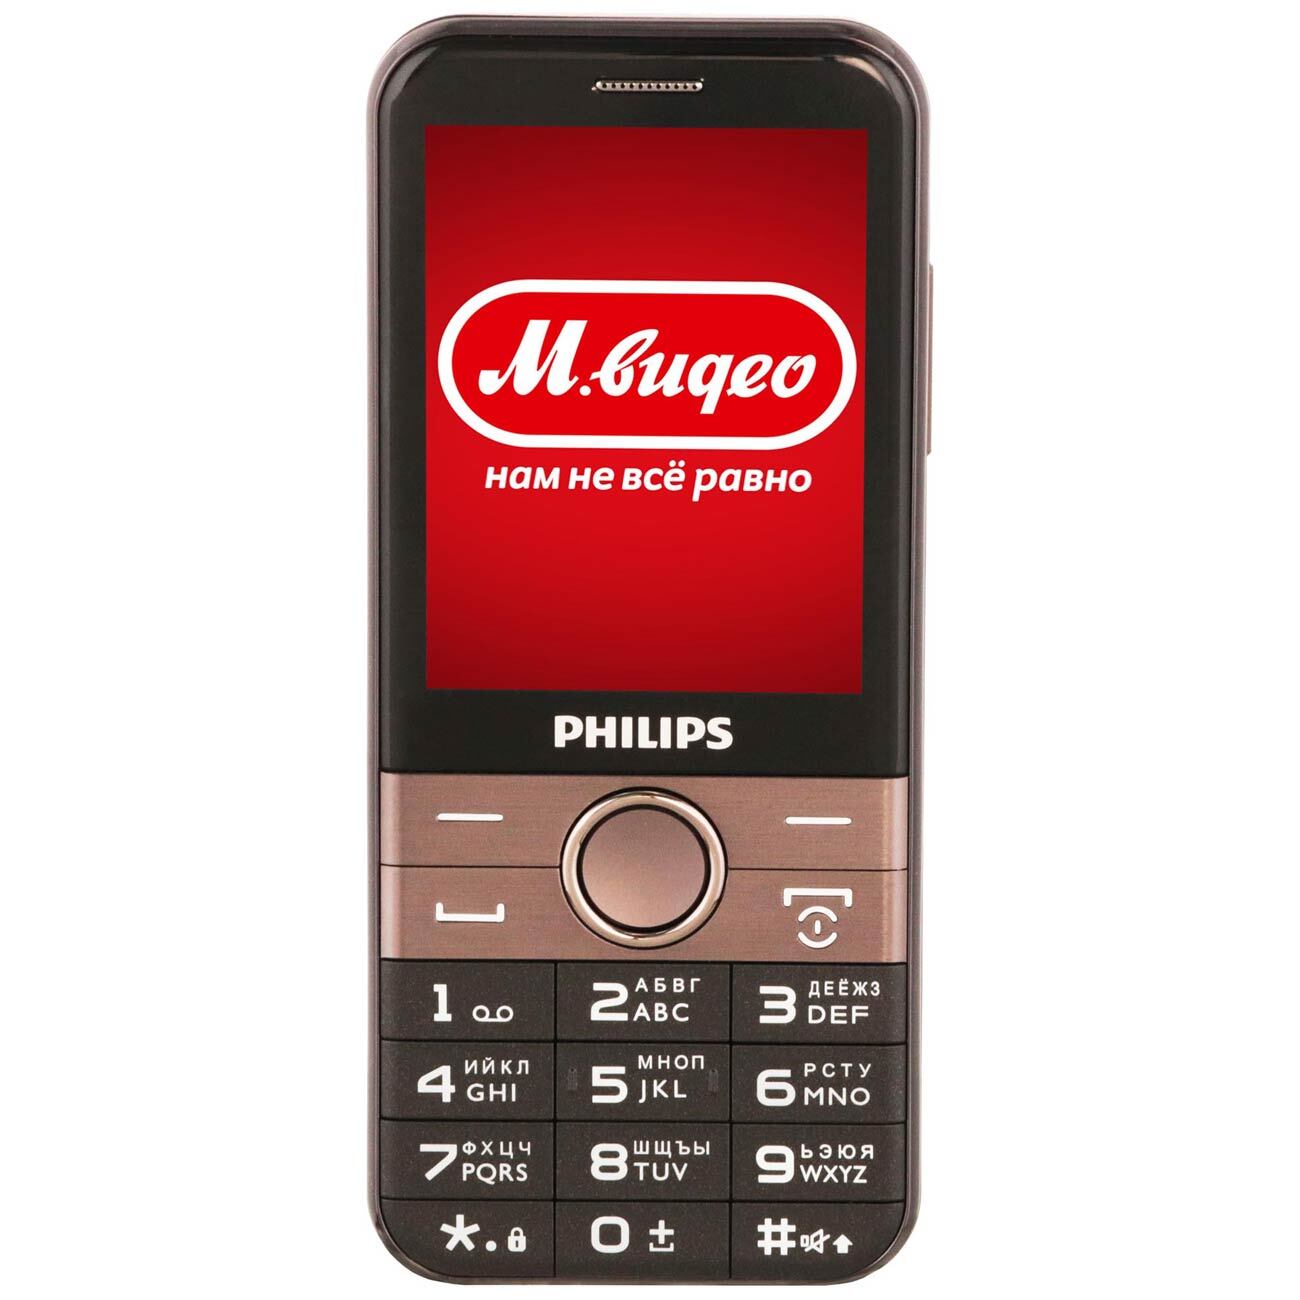 Филипс 580. Philips Xenium e580. Телефон Philips Xenium e580. Philips Xenium e580 Black. Philips Xenium e570.